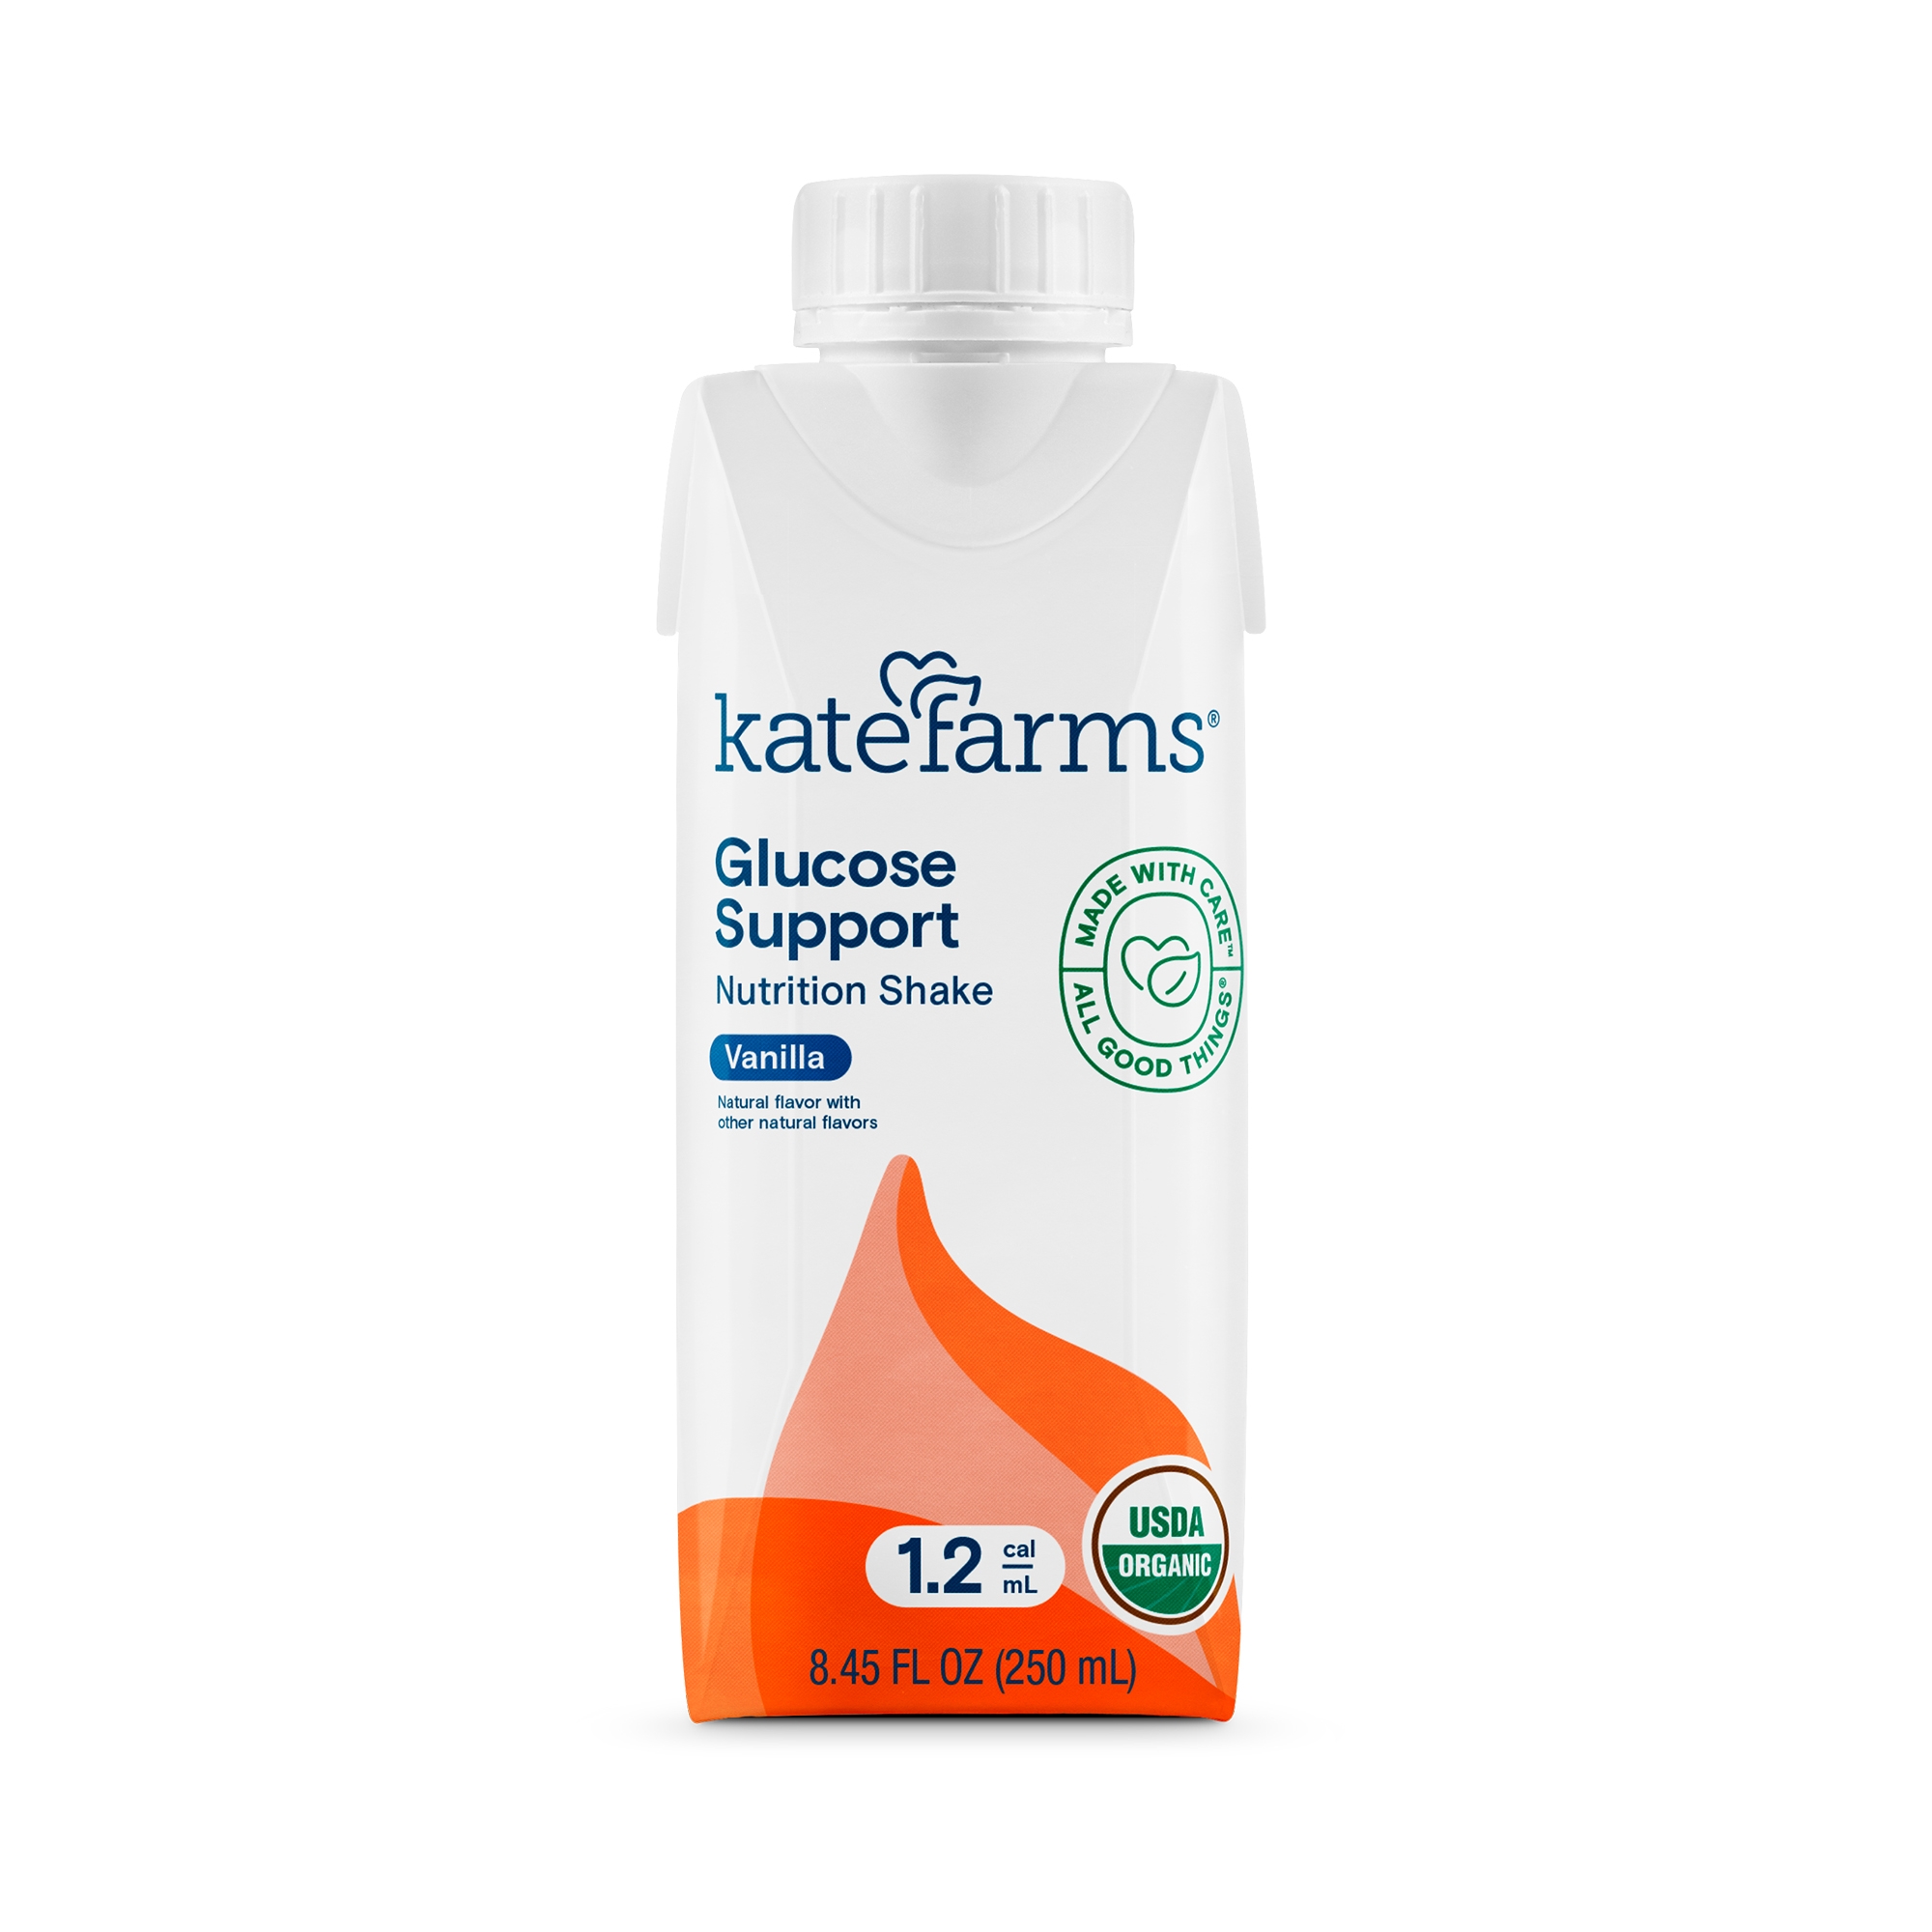 Kate Farms Glucose Support 1.2 Vanilla Nutrition Shake for Diabetics, 8.45-ounce carton MK 1184937